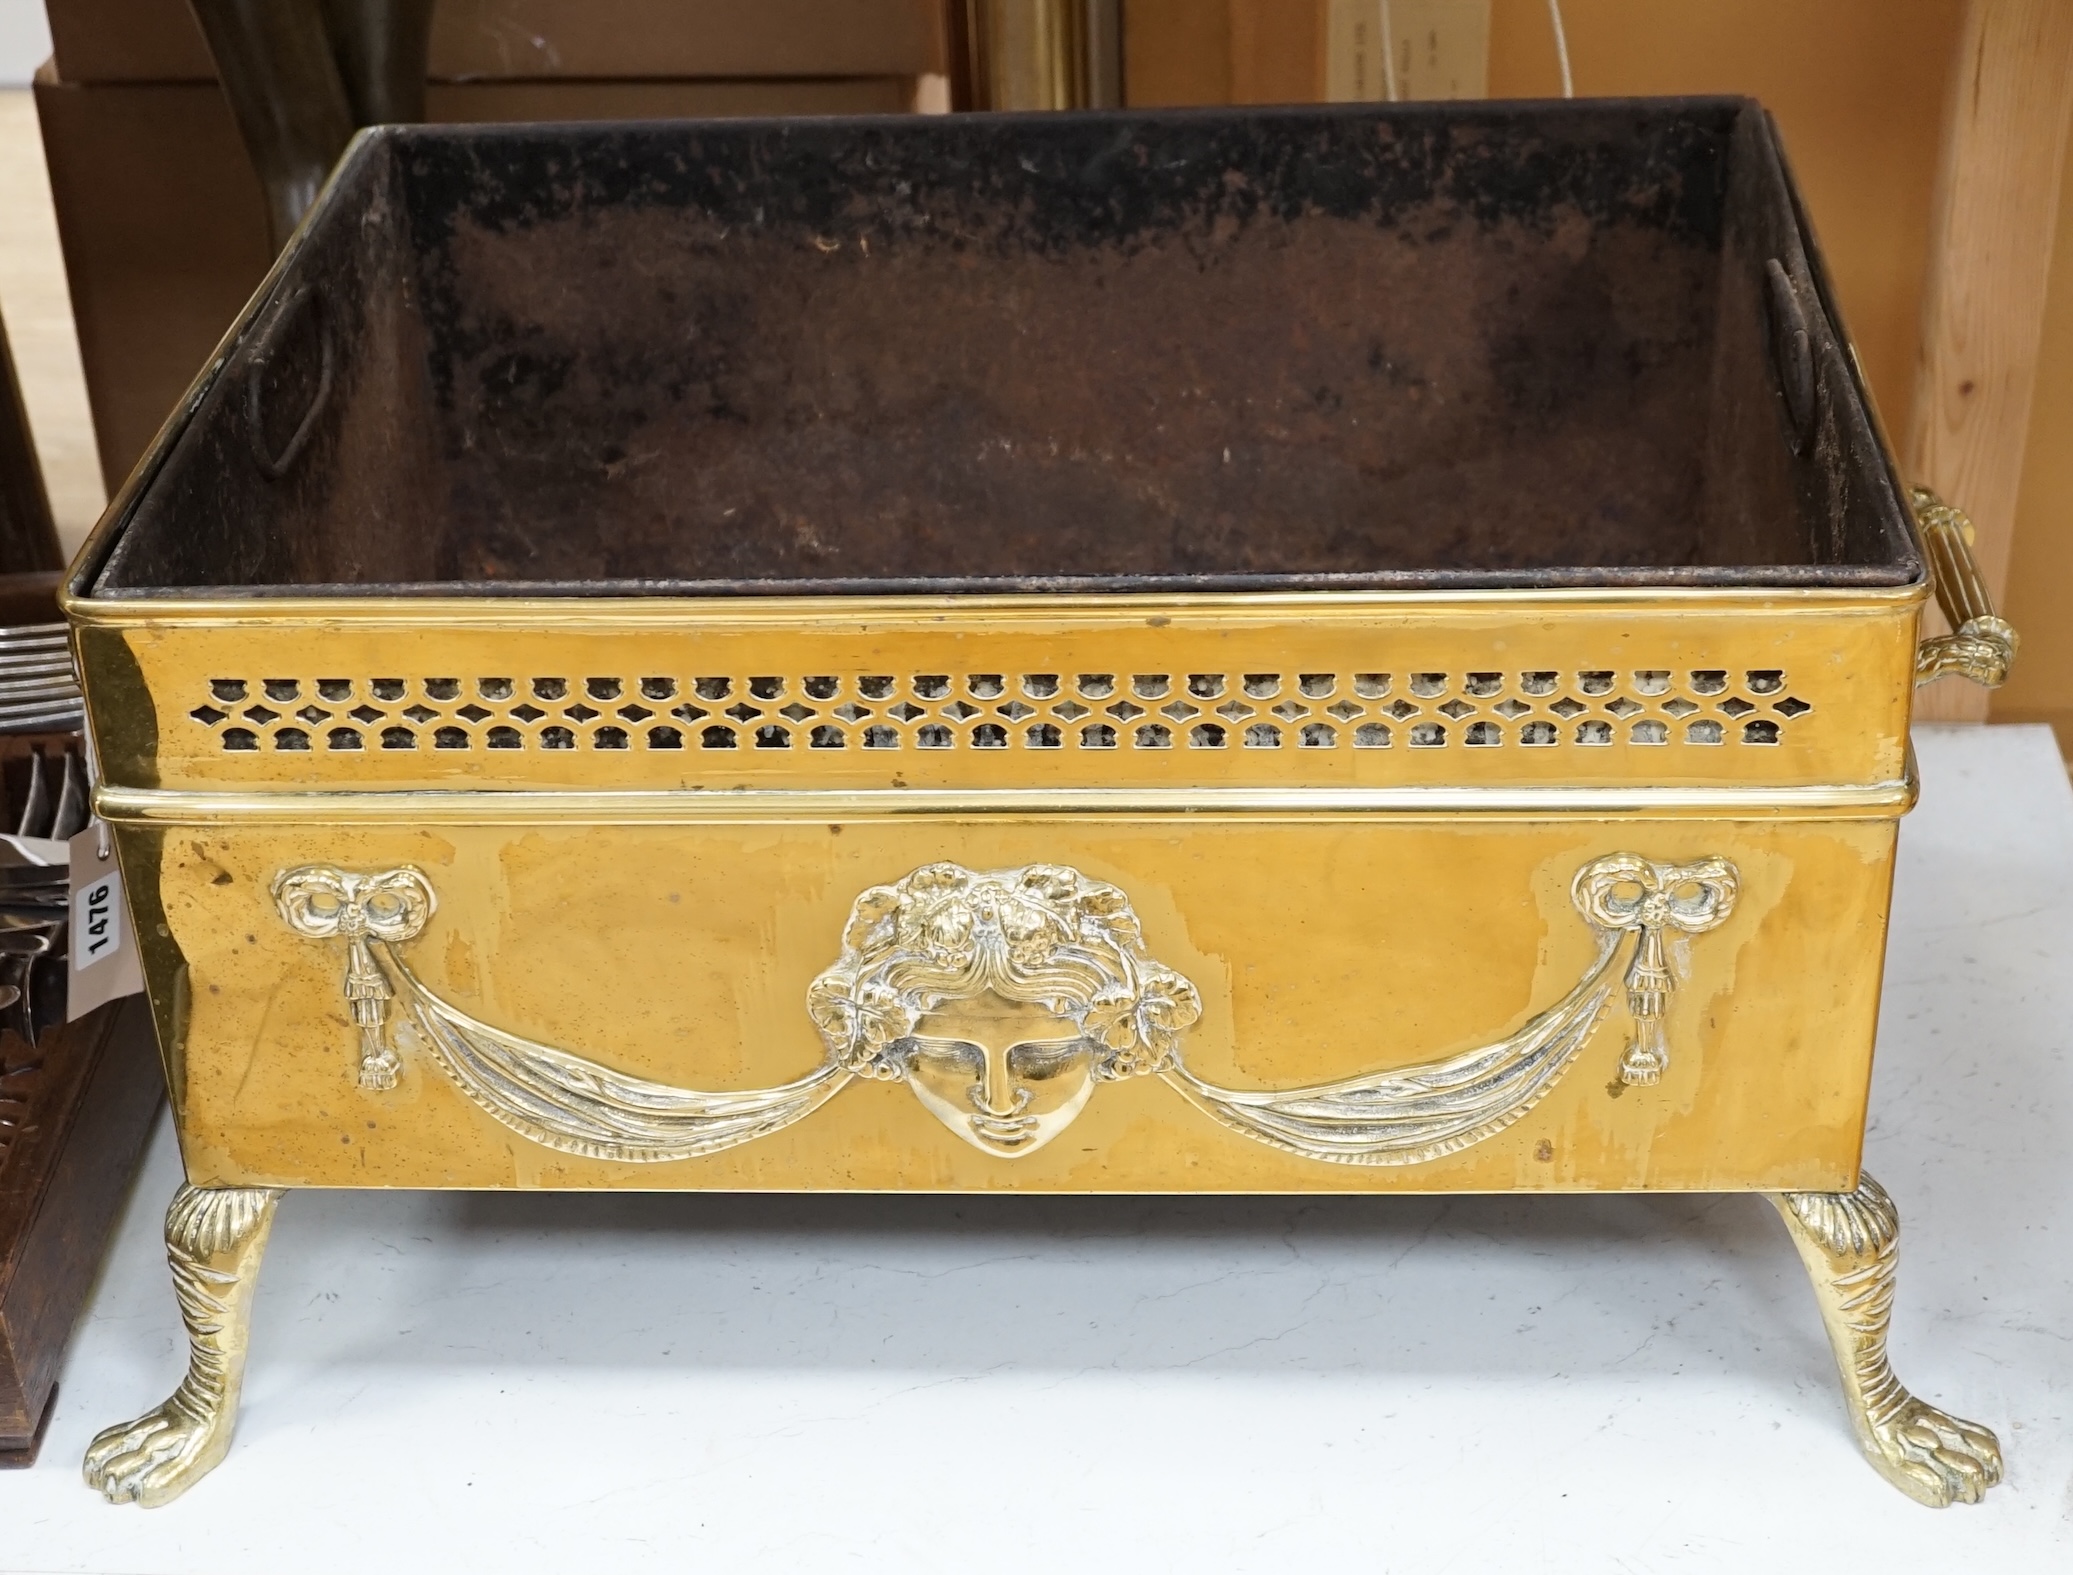 An early 20th century brass coal/log bin, 70cm wide